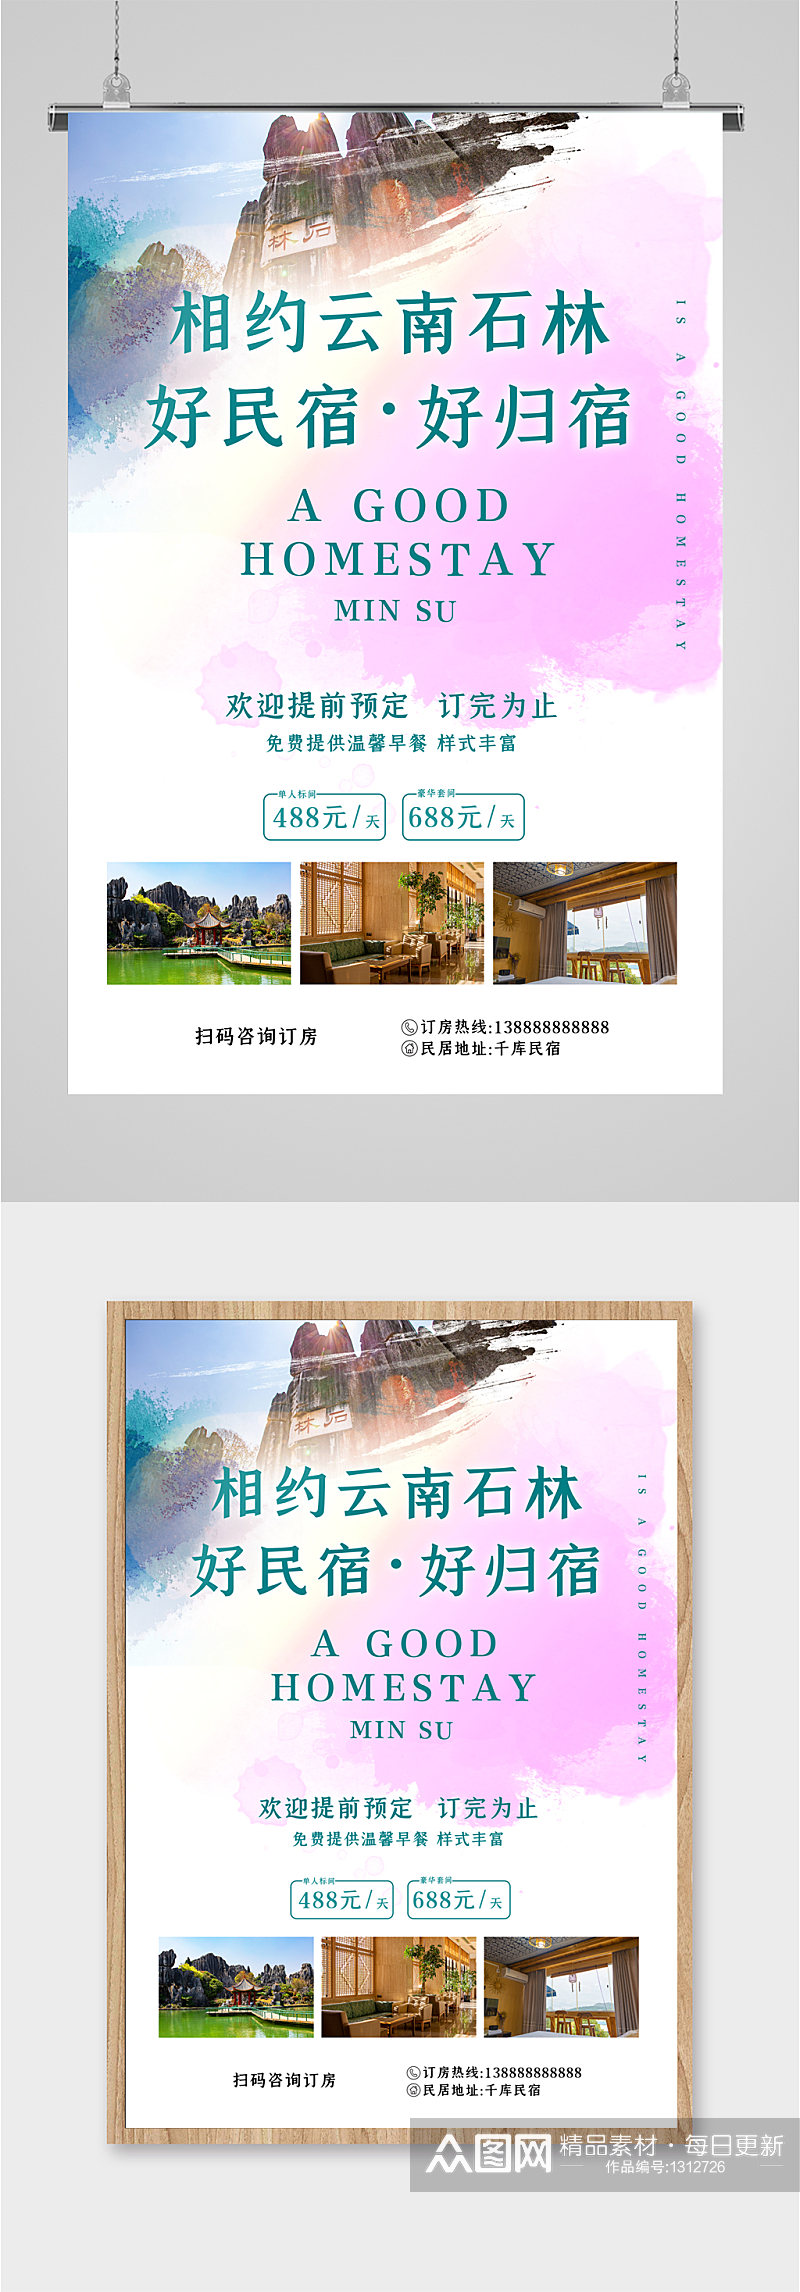 民宿酒店宣传海报素材